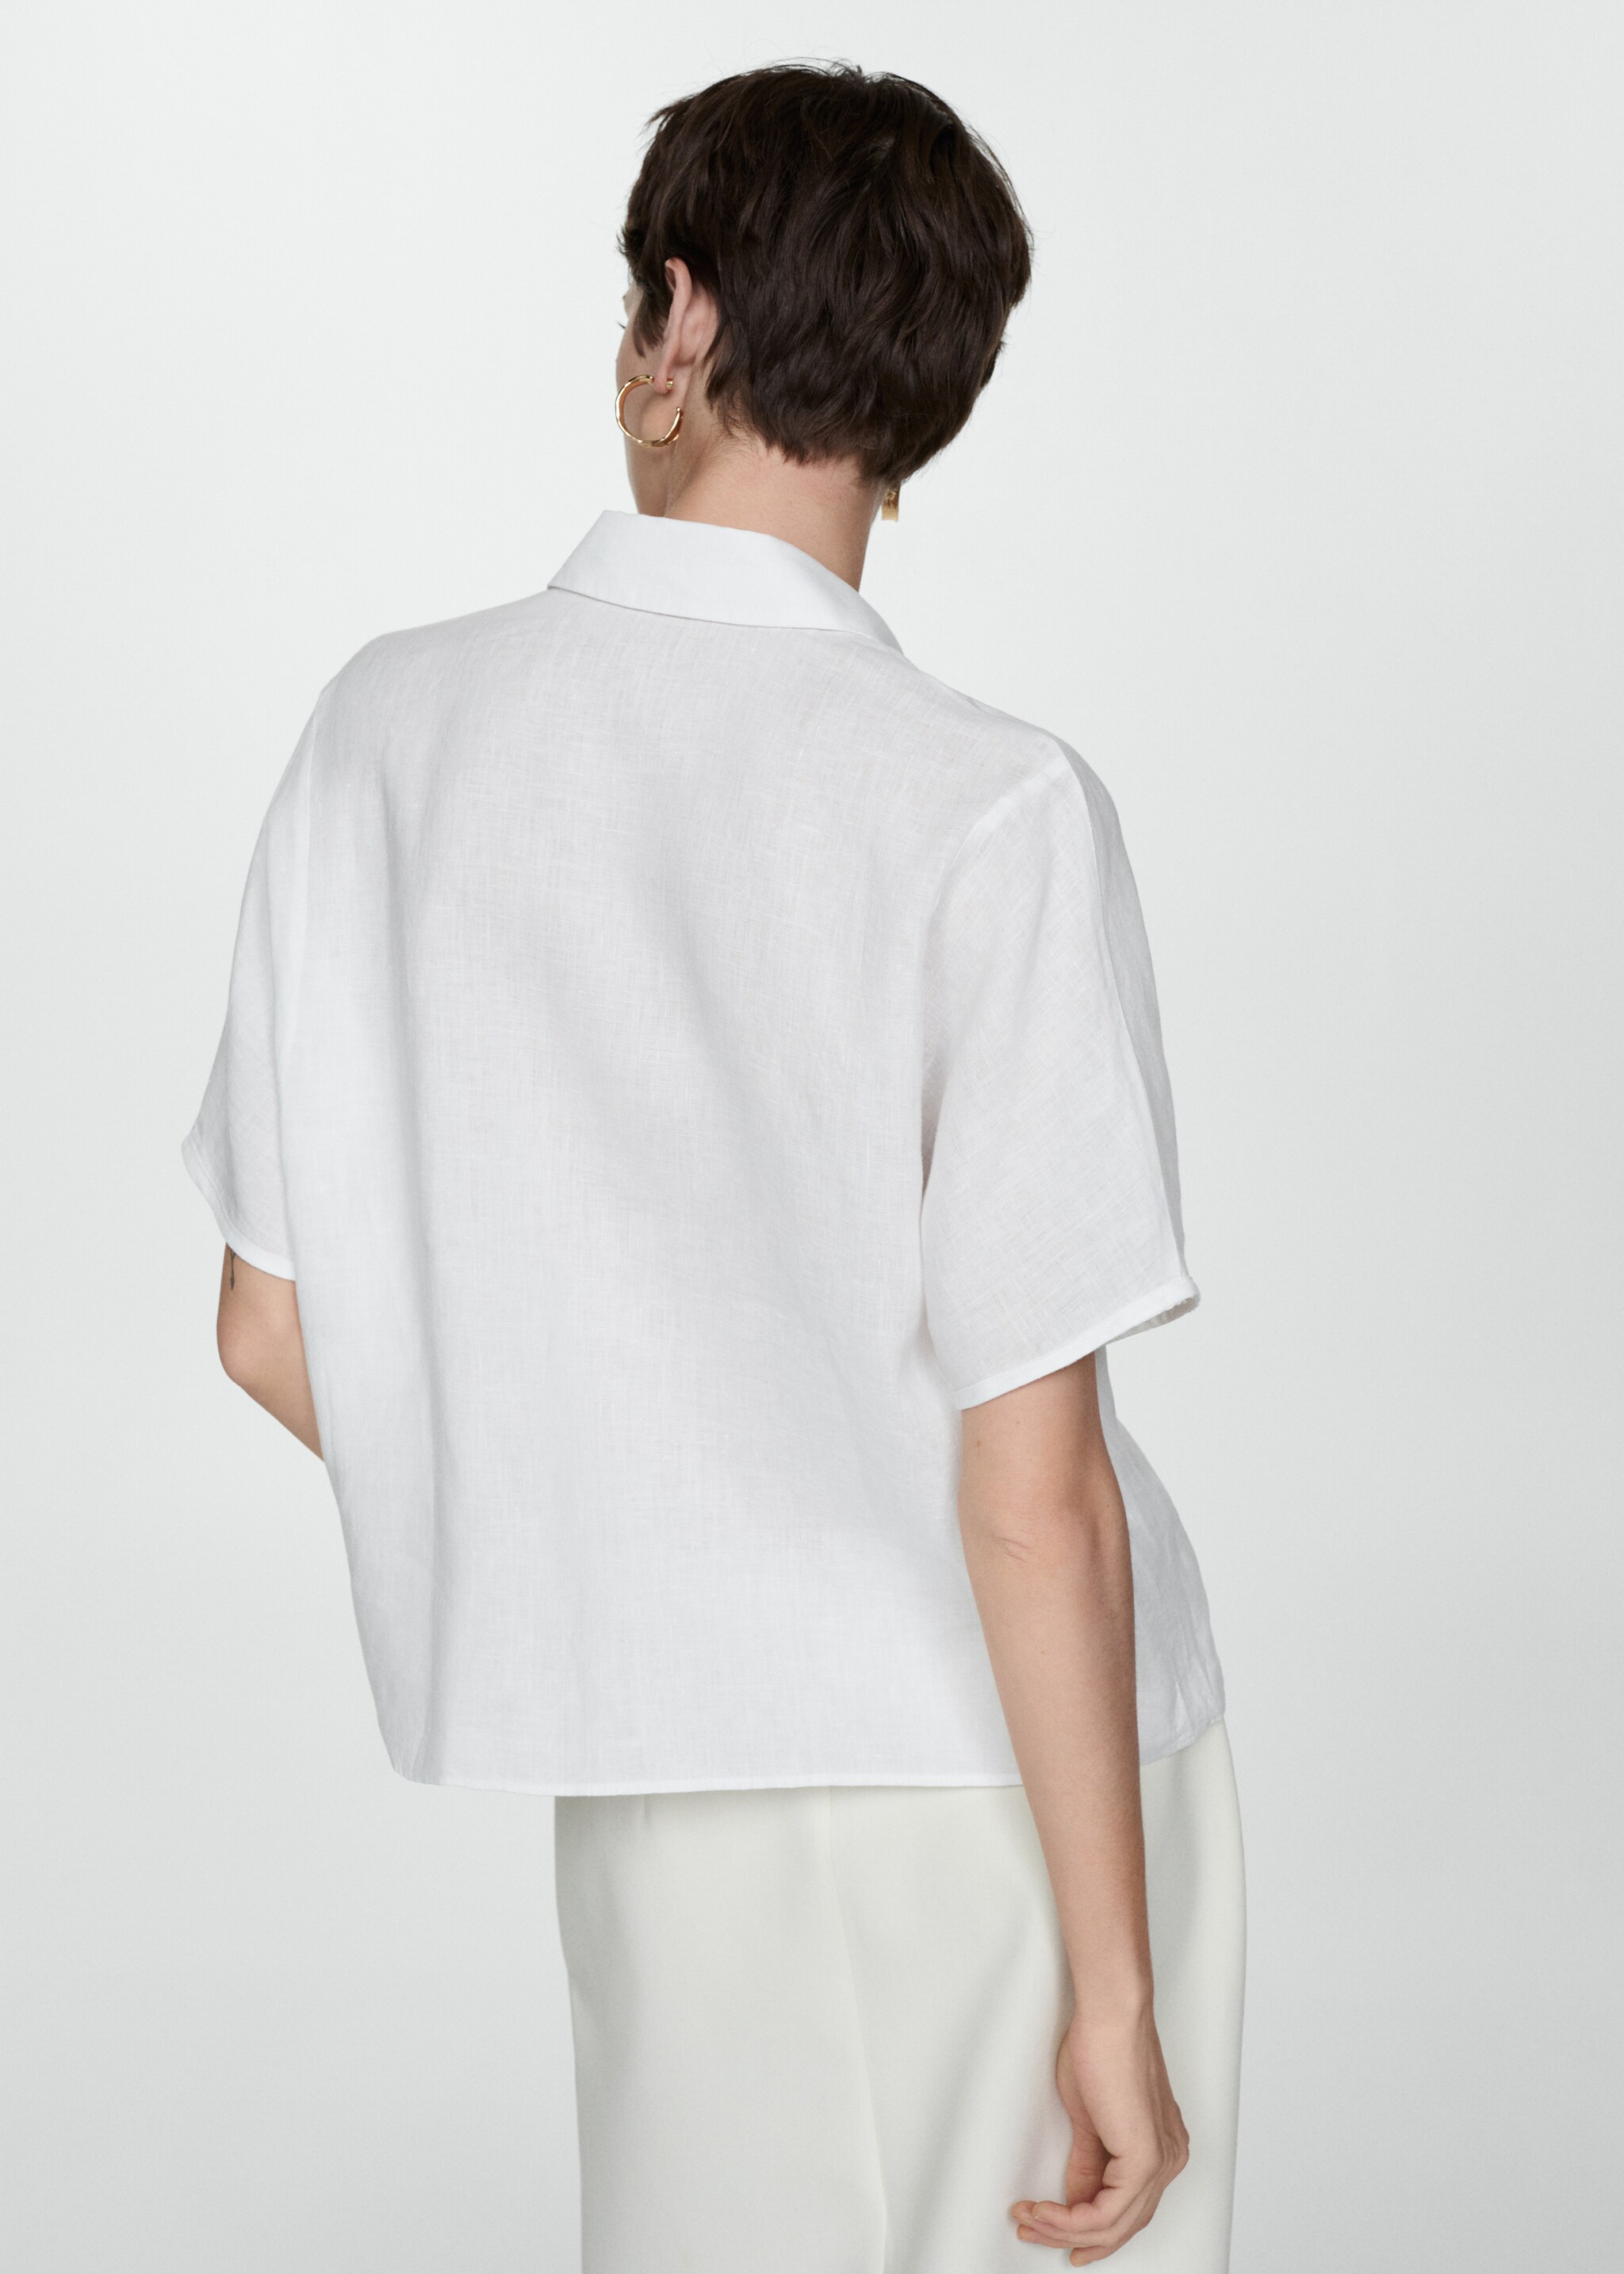 Linen 100% shirt - Обратная сторона изделия